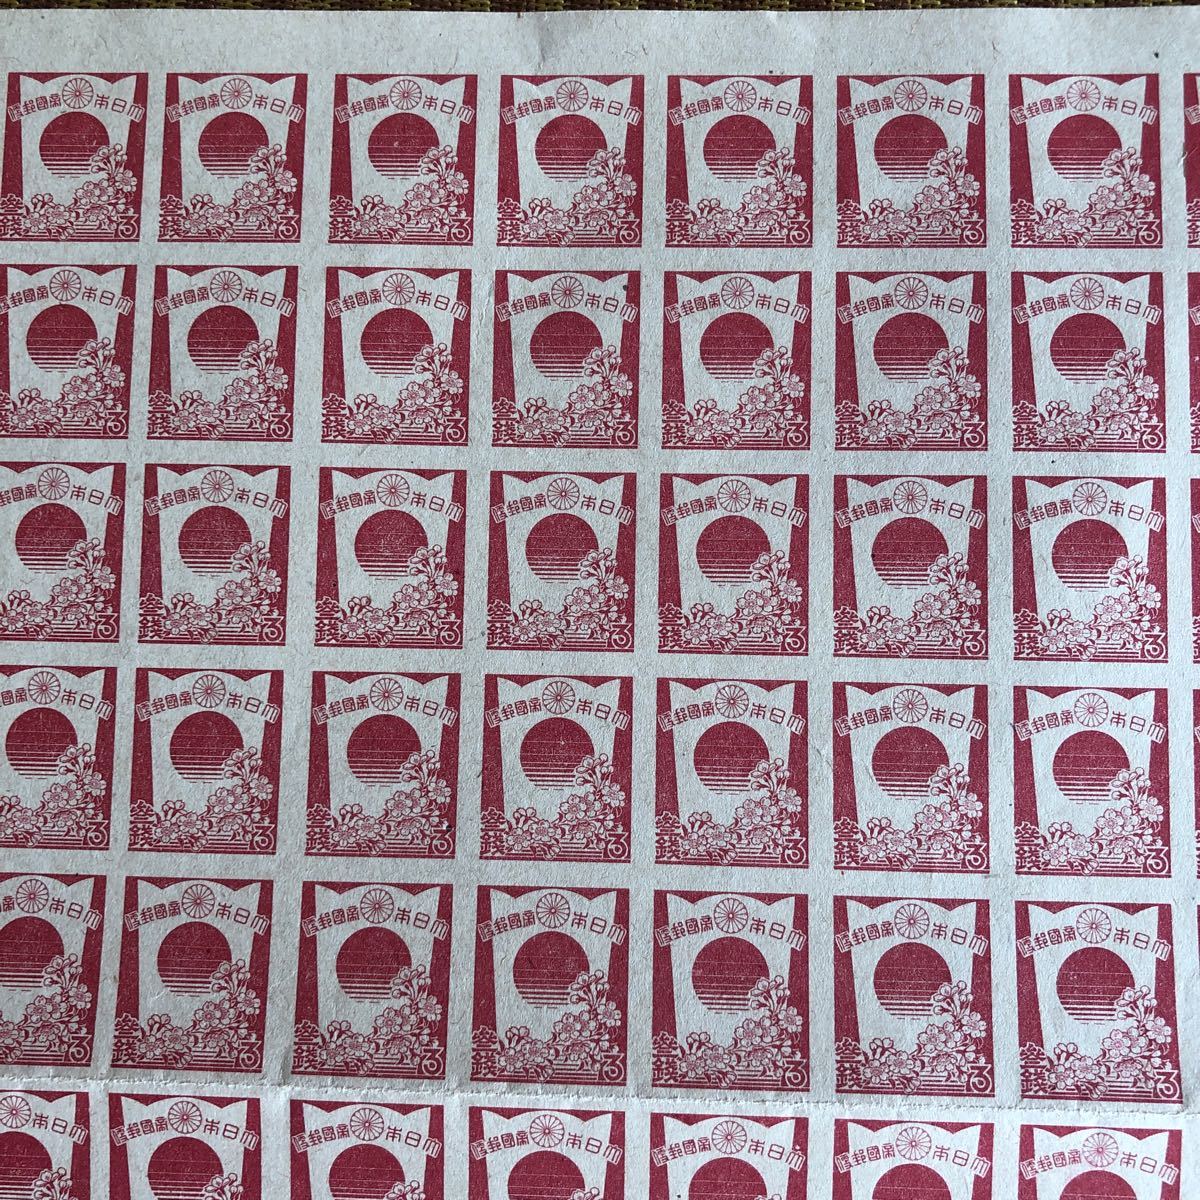 大東亜戦争末期の昭和20年8月1日発行 3銭切手100枚シート 盾と桜の図柄